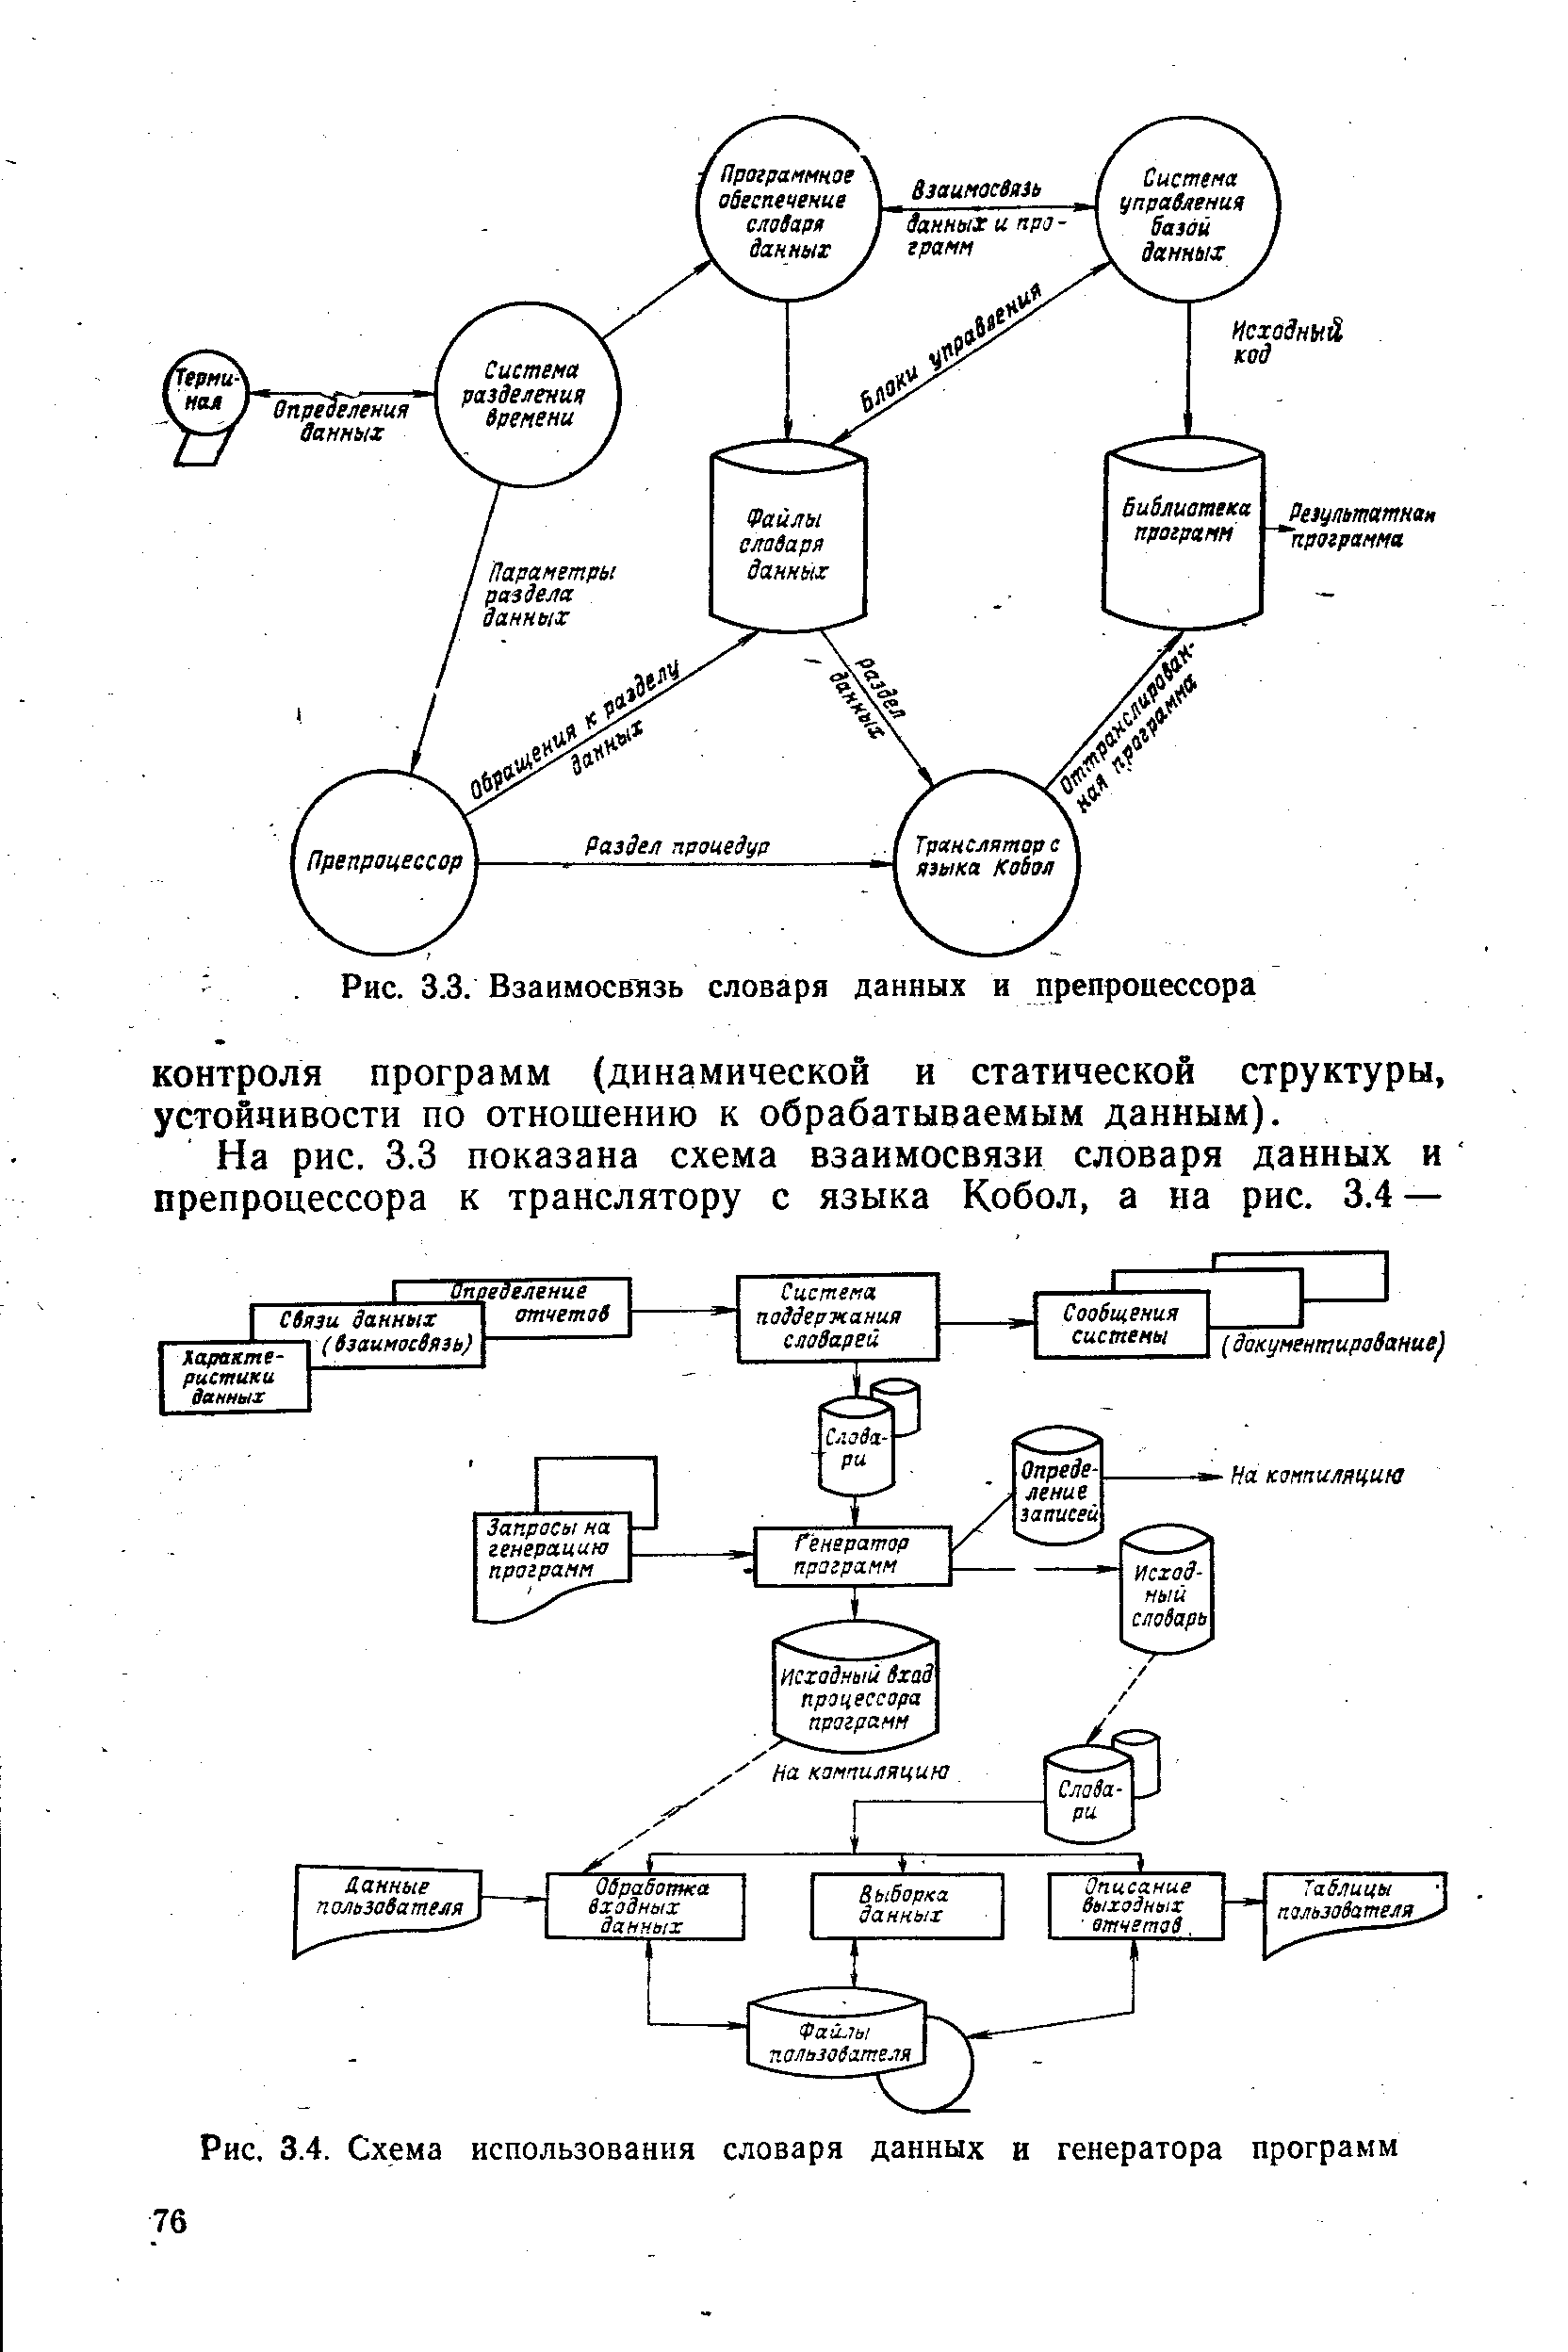 Рис. 3.4. Схема использования словаря данных в генератора программ
